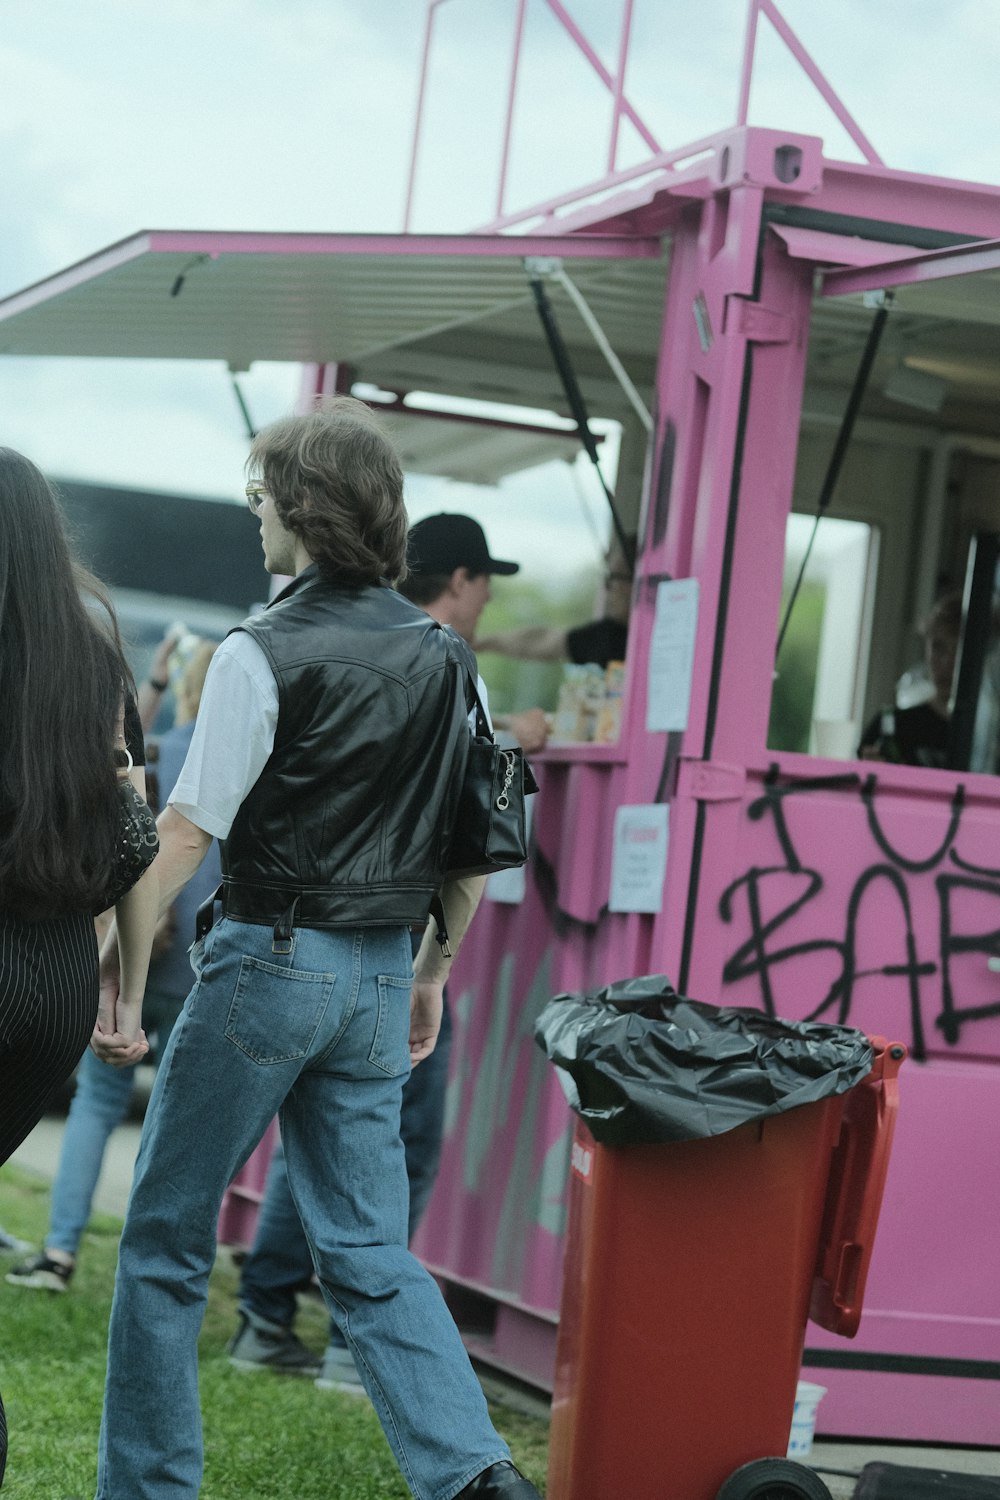 Un groupe de personnes debout autour d’un food truck rose